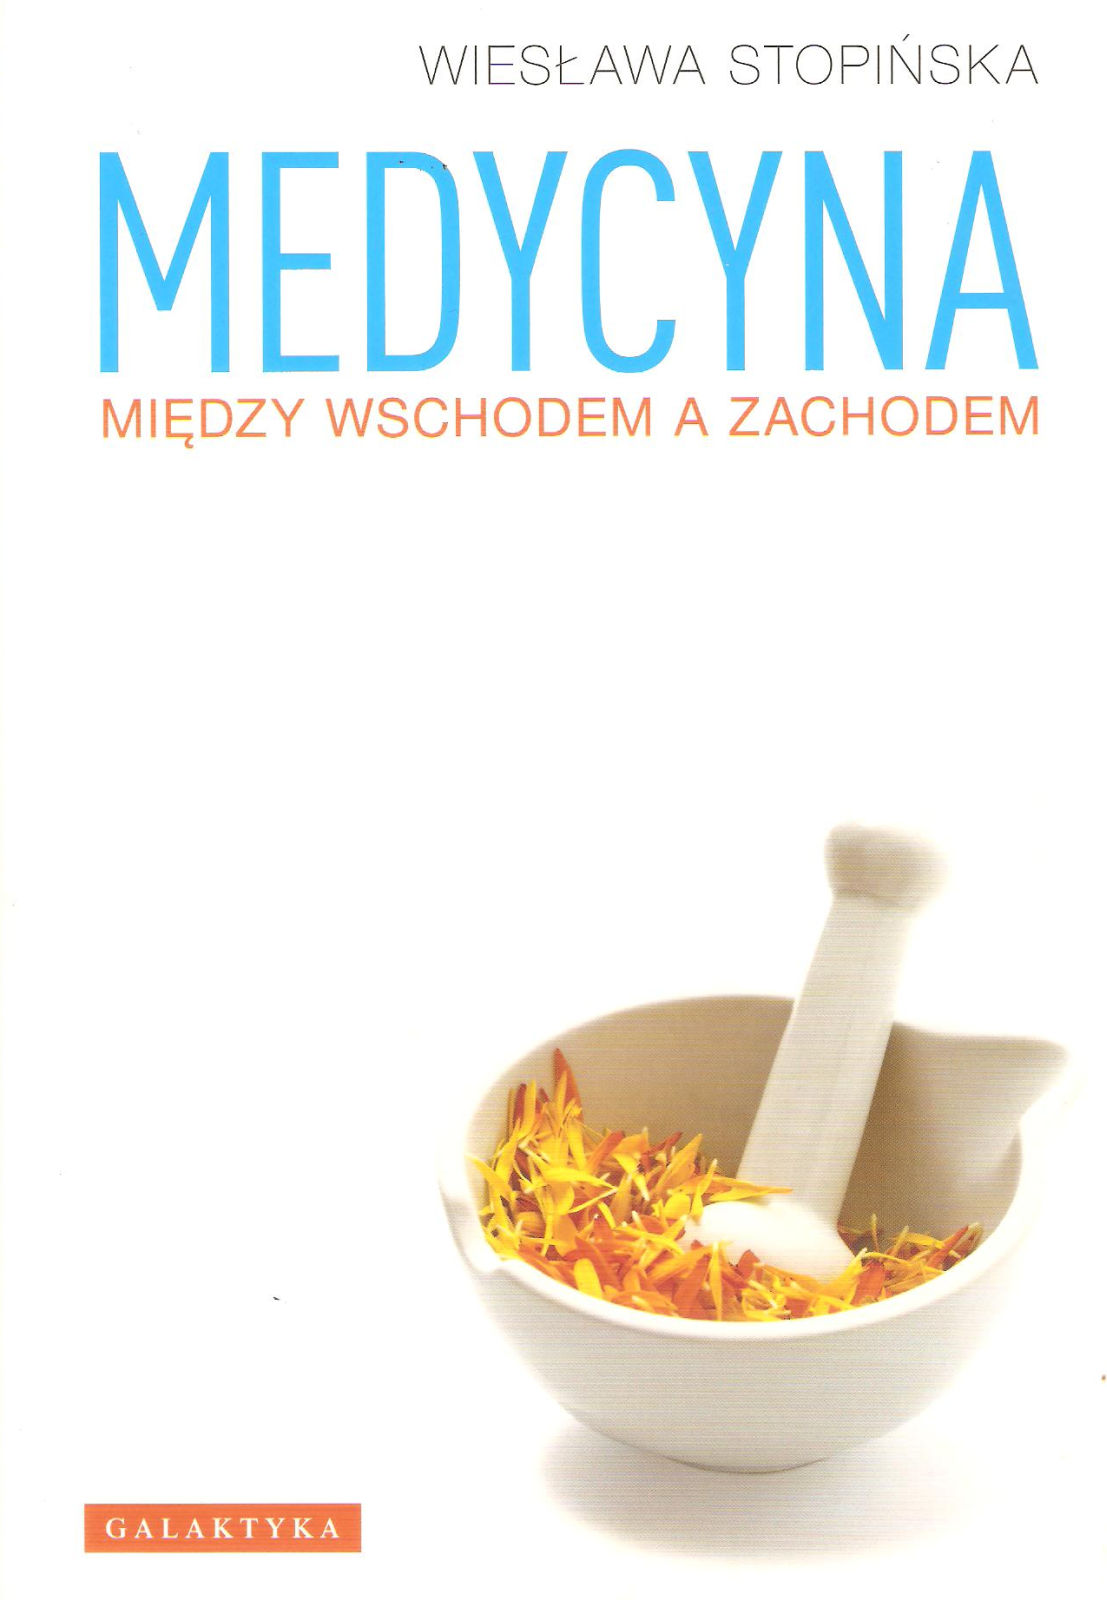 Medycyna midzy Wschodem a Zachodem, wydanie 2011